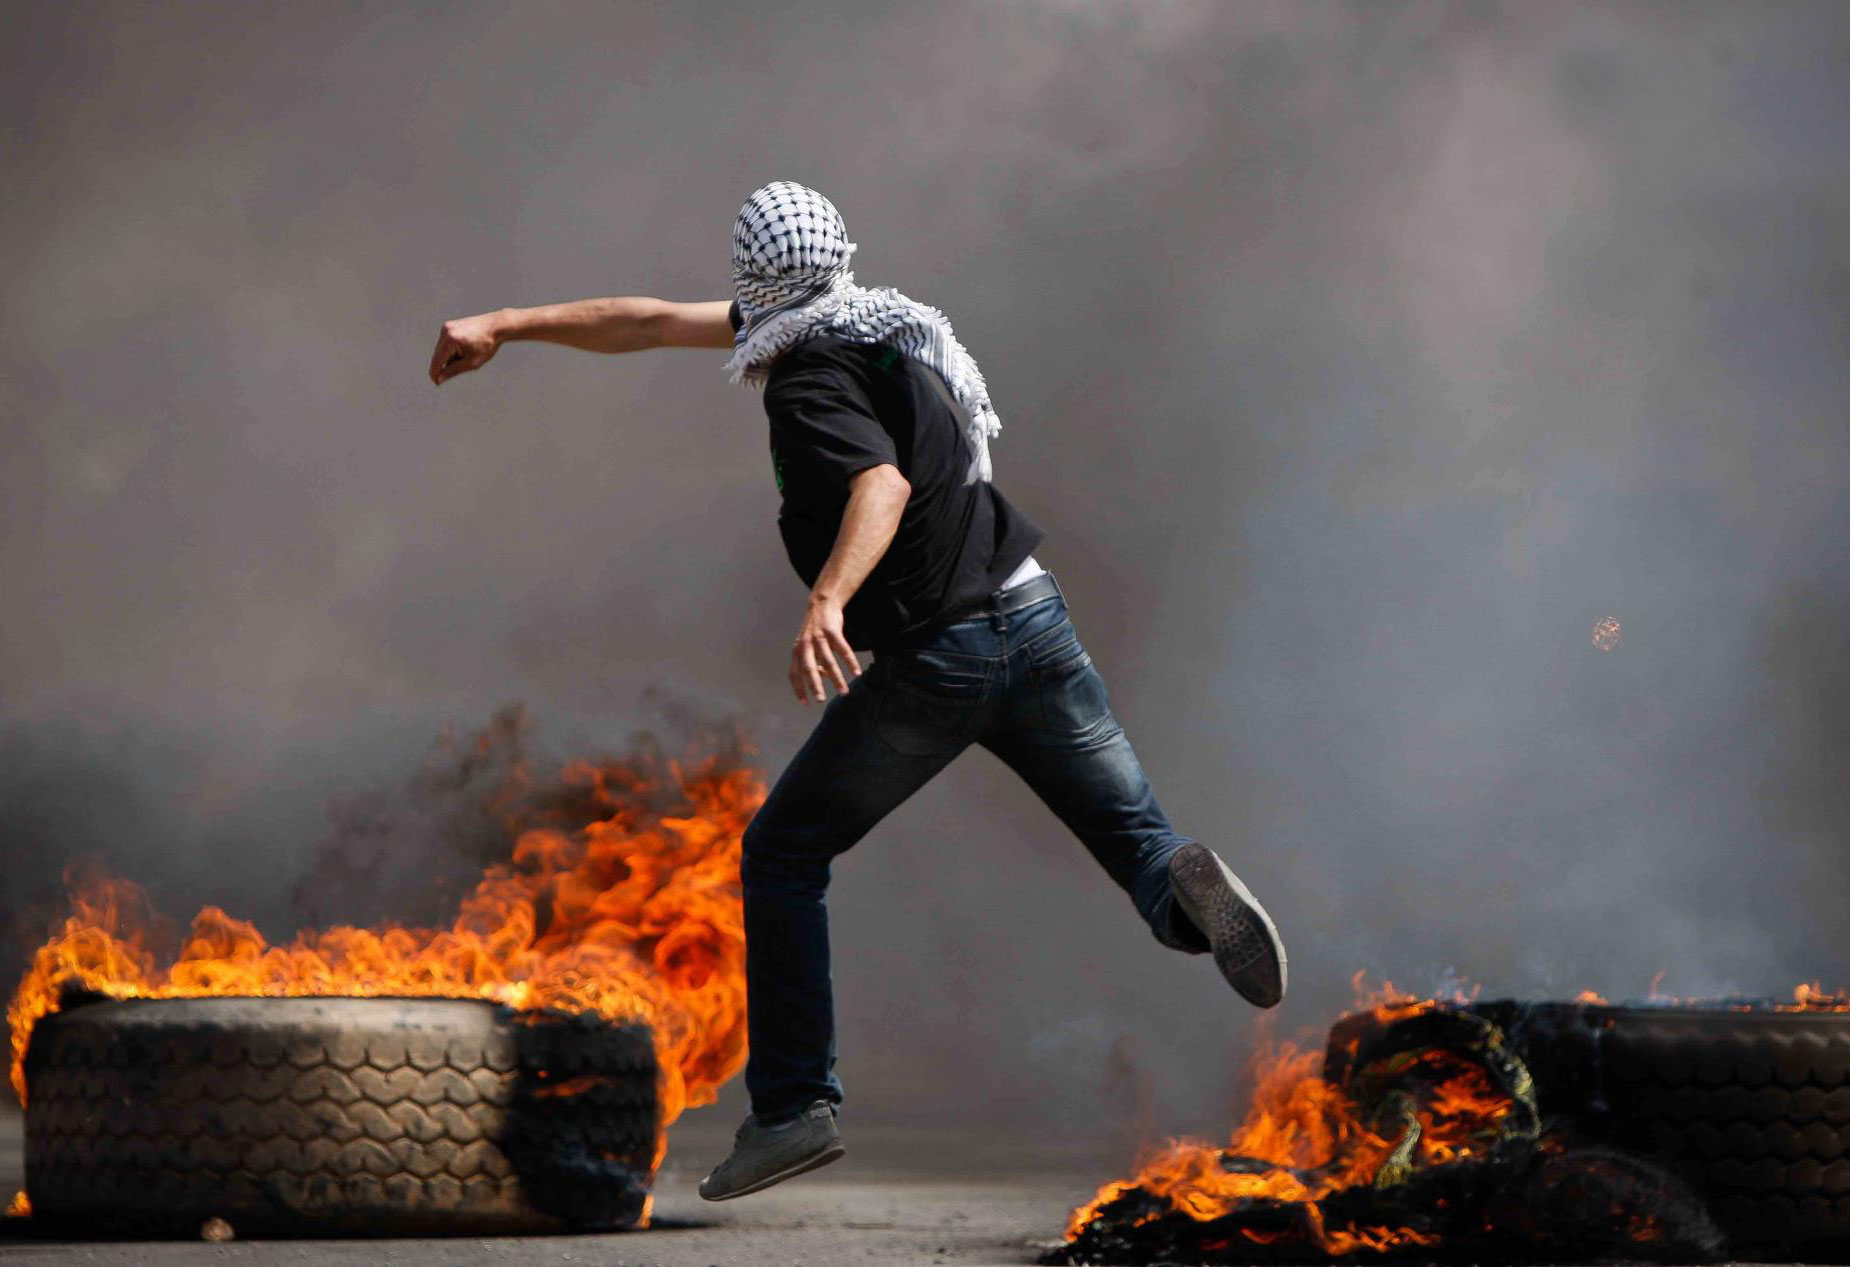 صورة فلسطيني يقتل مستوطناً اسرائيلياً باستخدام نسخة من اتفاقية أوسلو